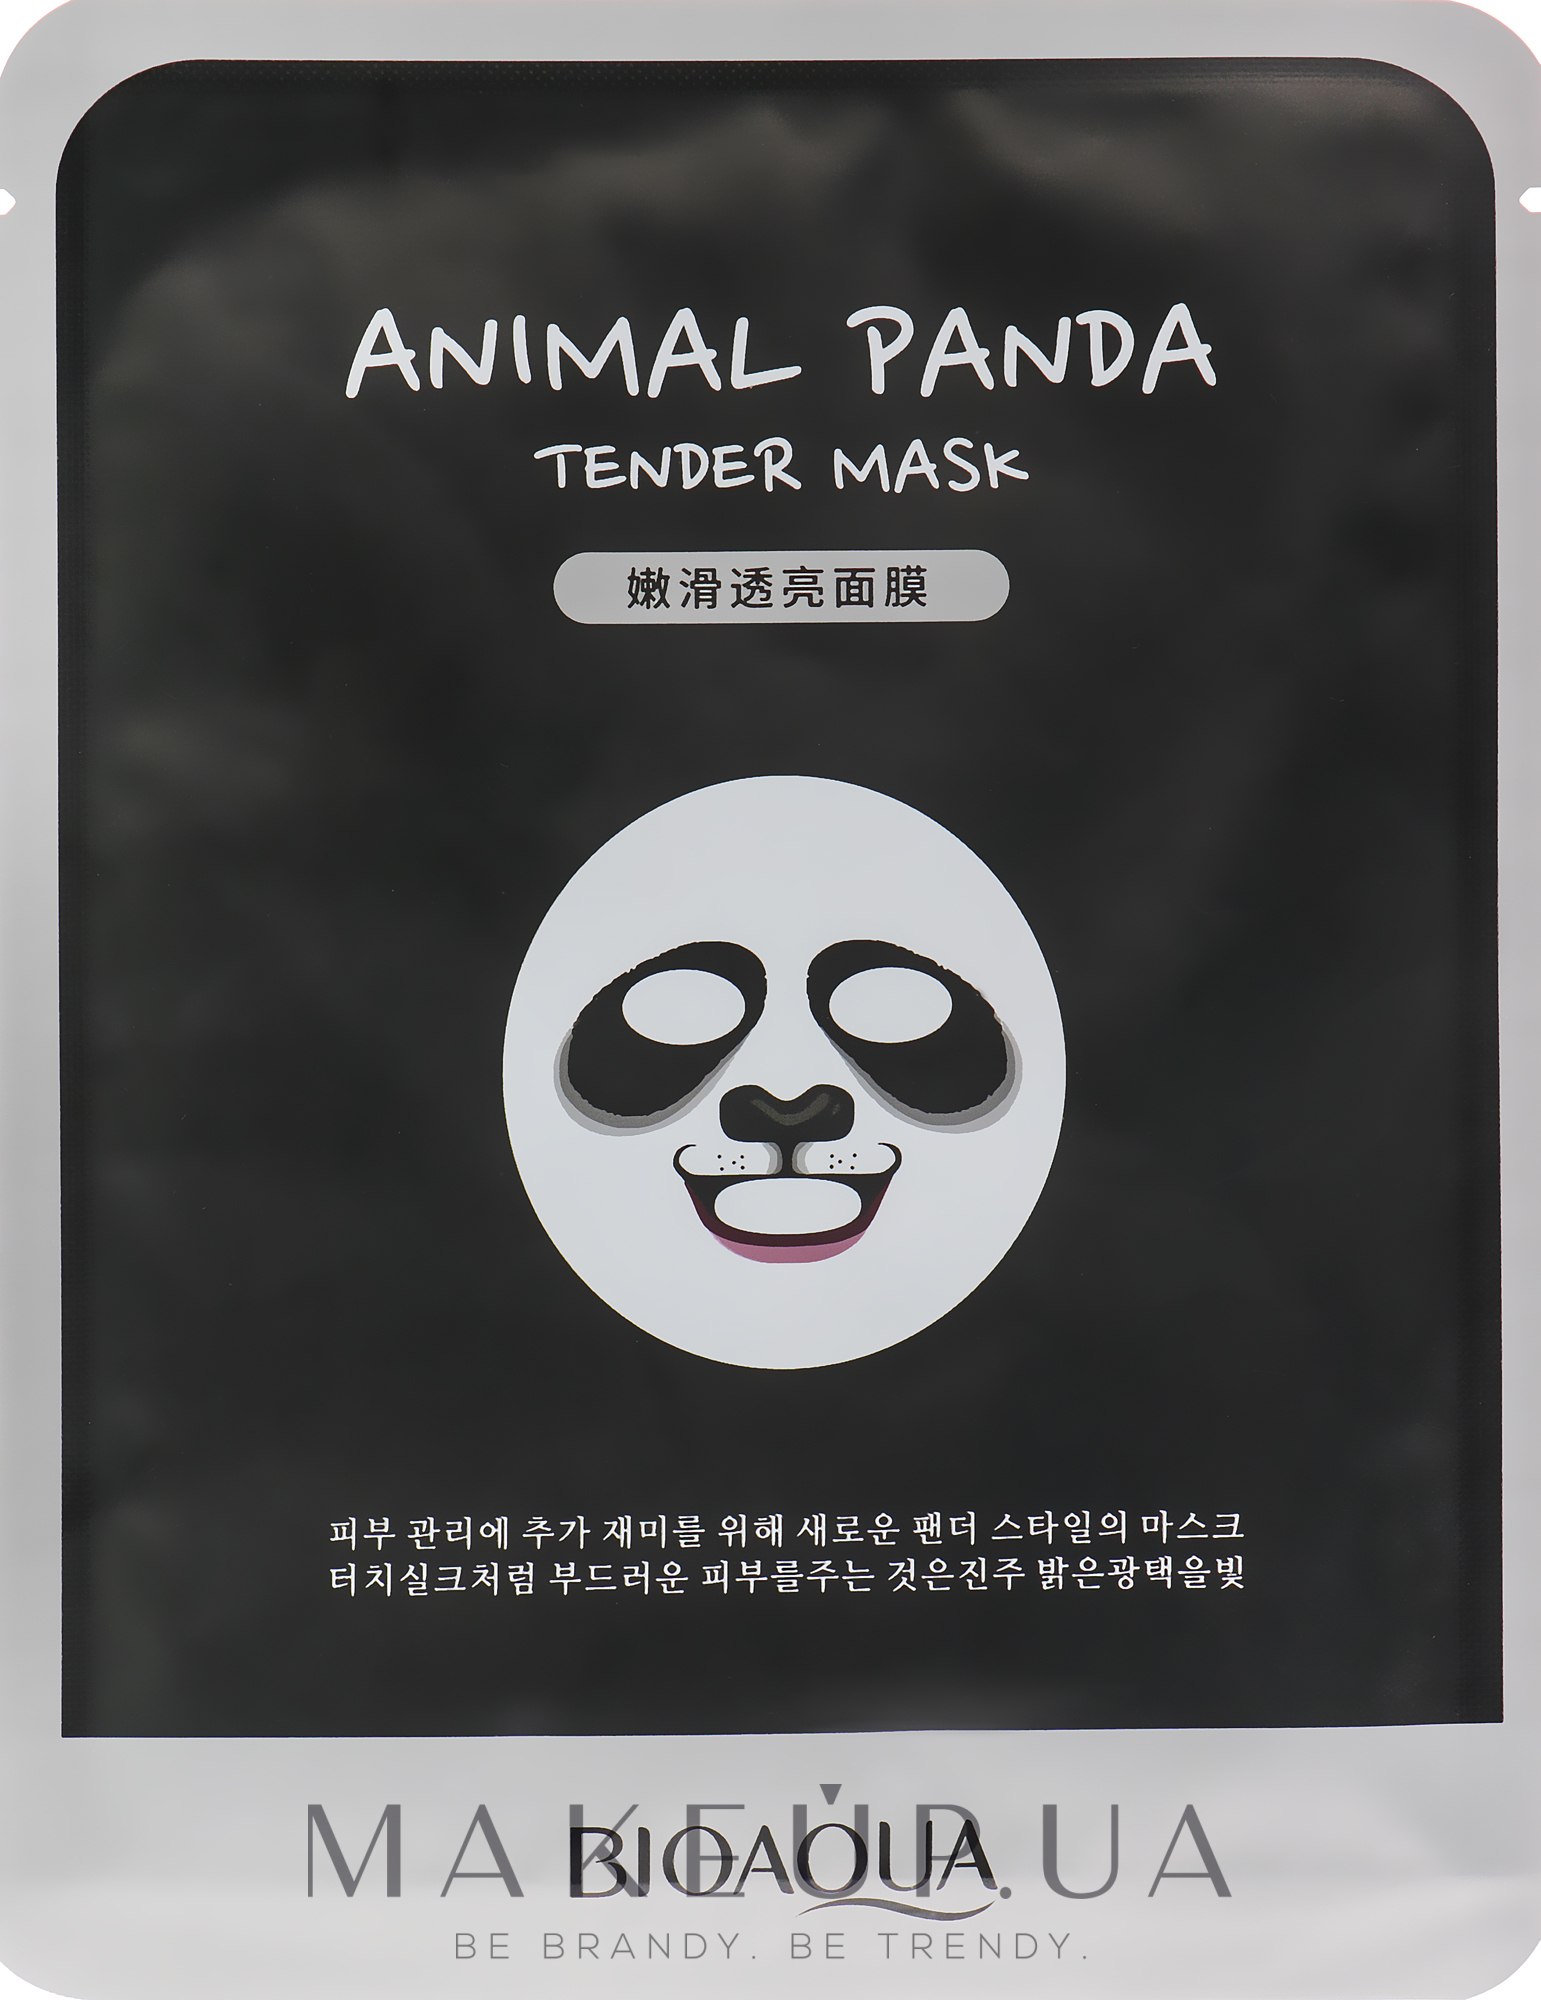 Смягчающая тканевая маска для лица с принтом - BioAqua Panda Tender Mask — фото 30g